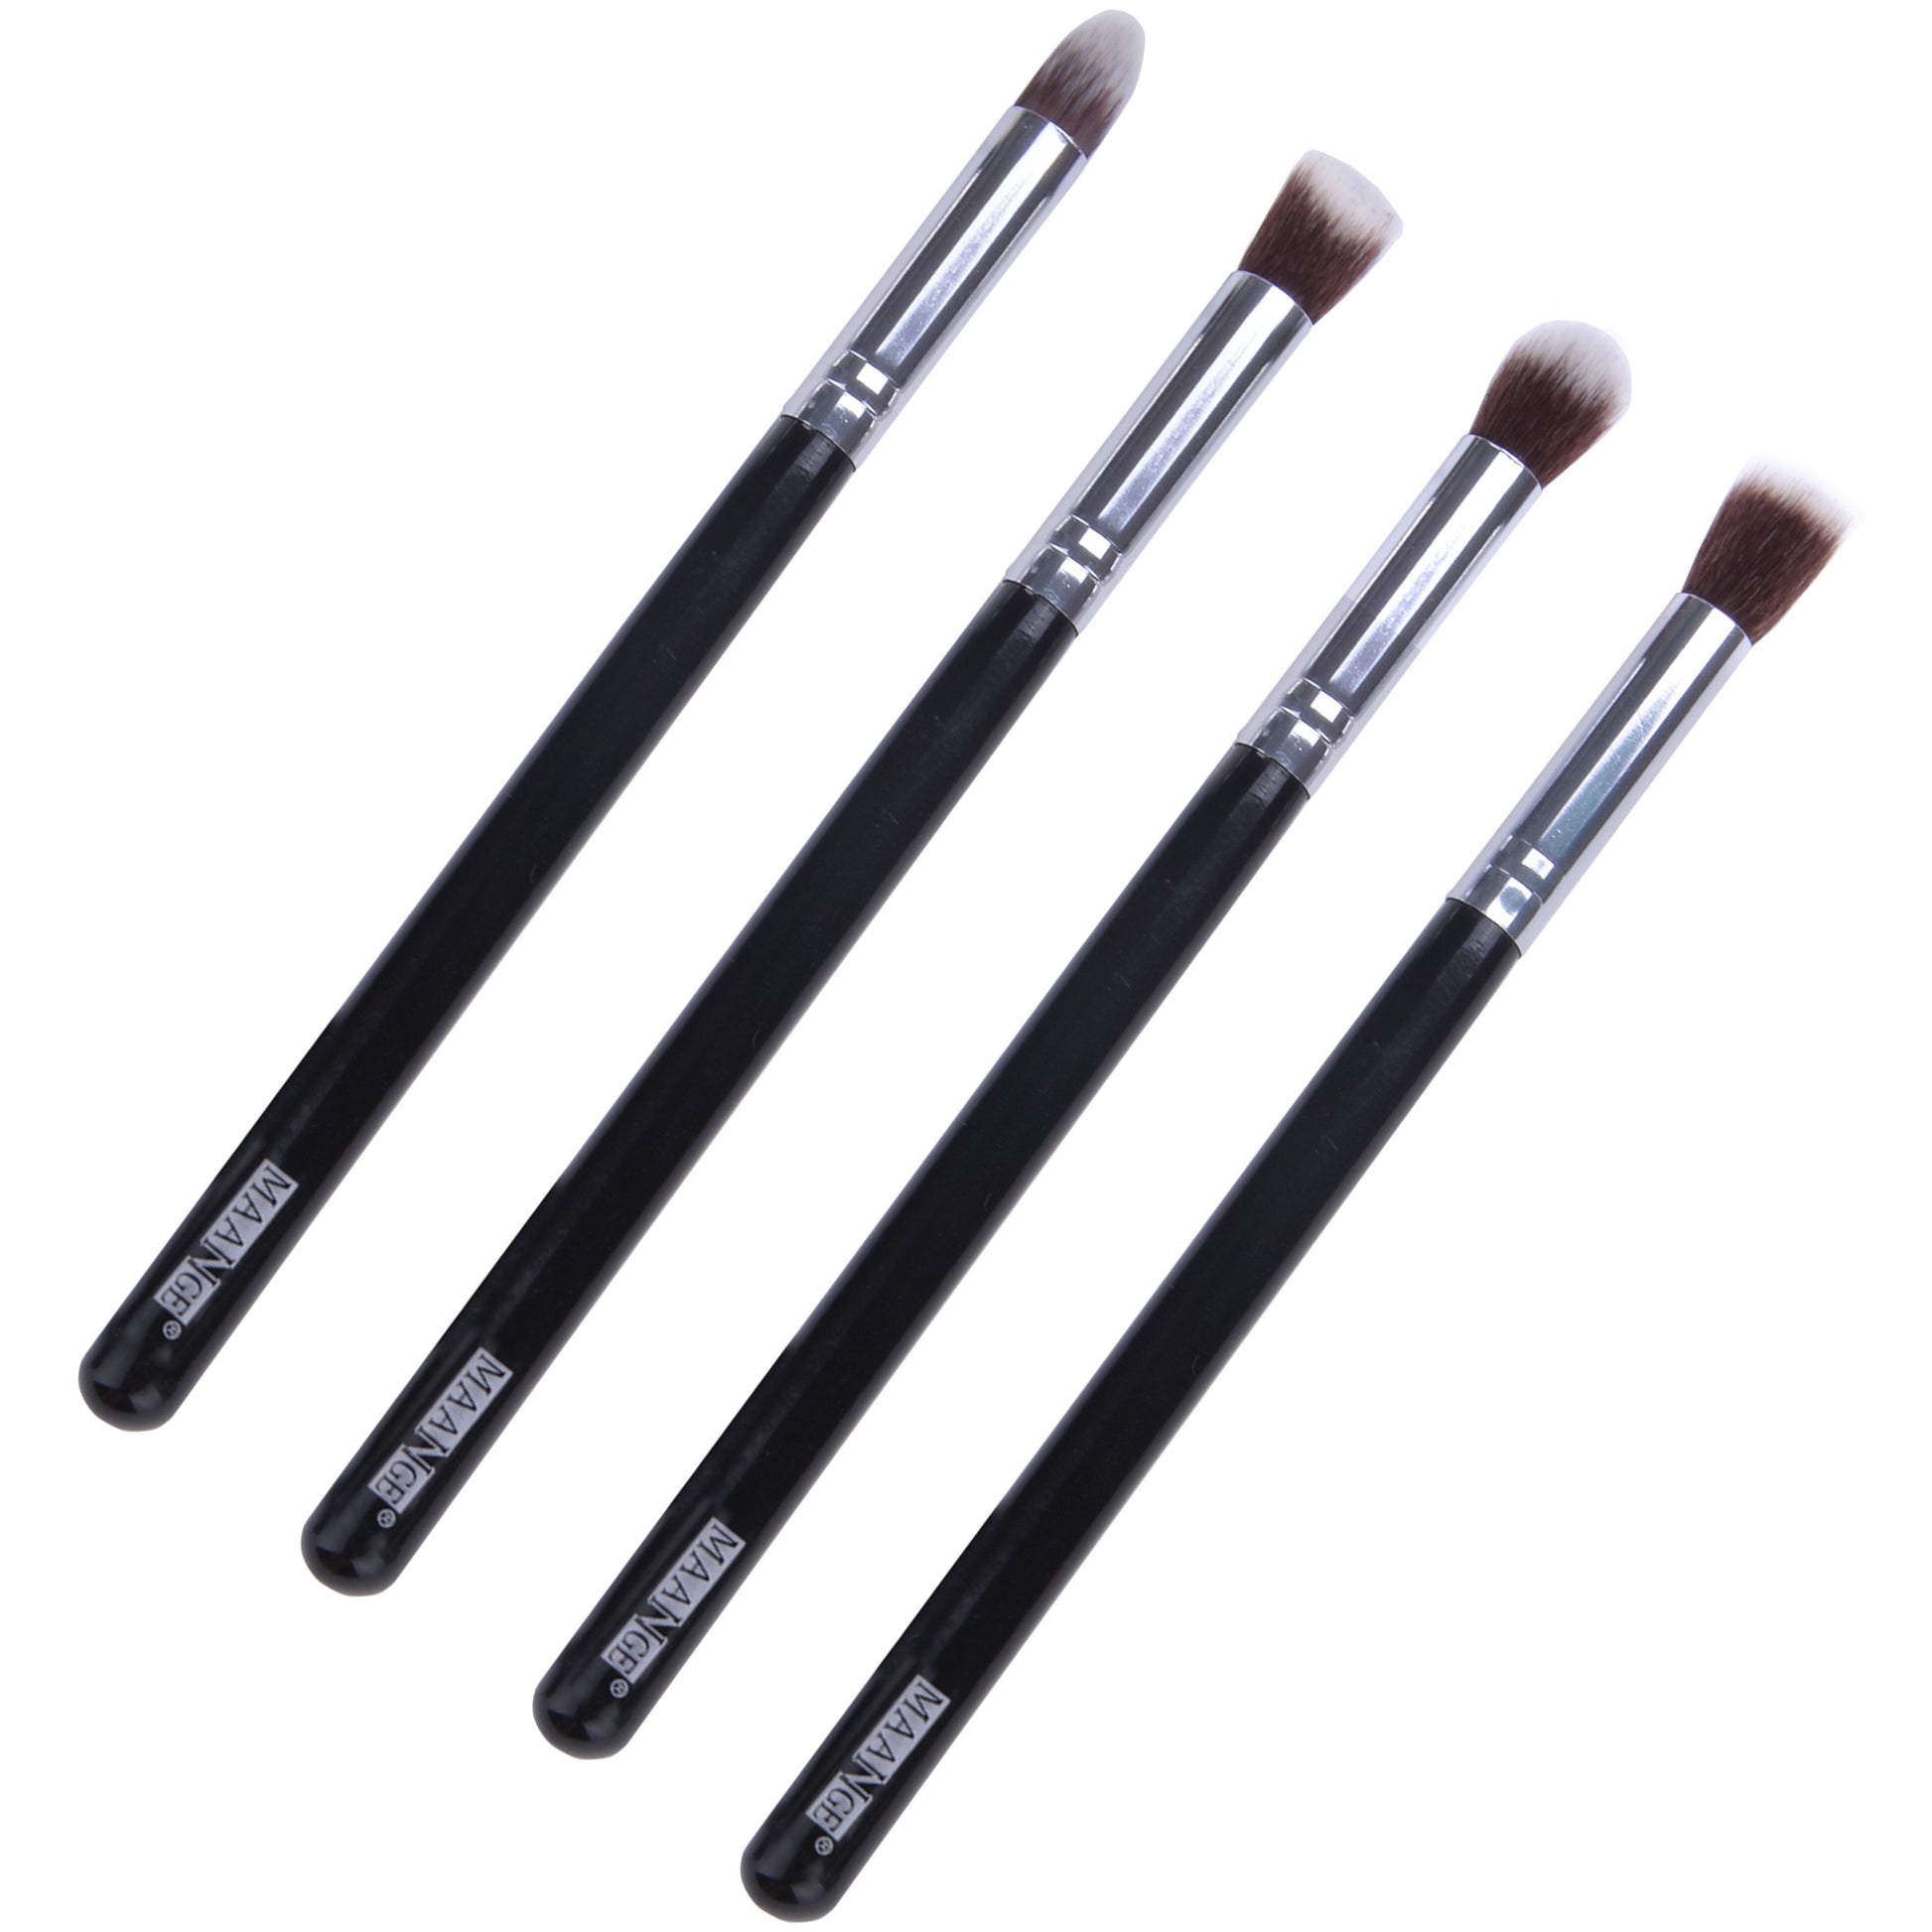 Kabuki Set Kits 4pcs Makeup brush cosmetics Foundation Eyeshadow brushes - Oh Yours Fashion - 11